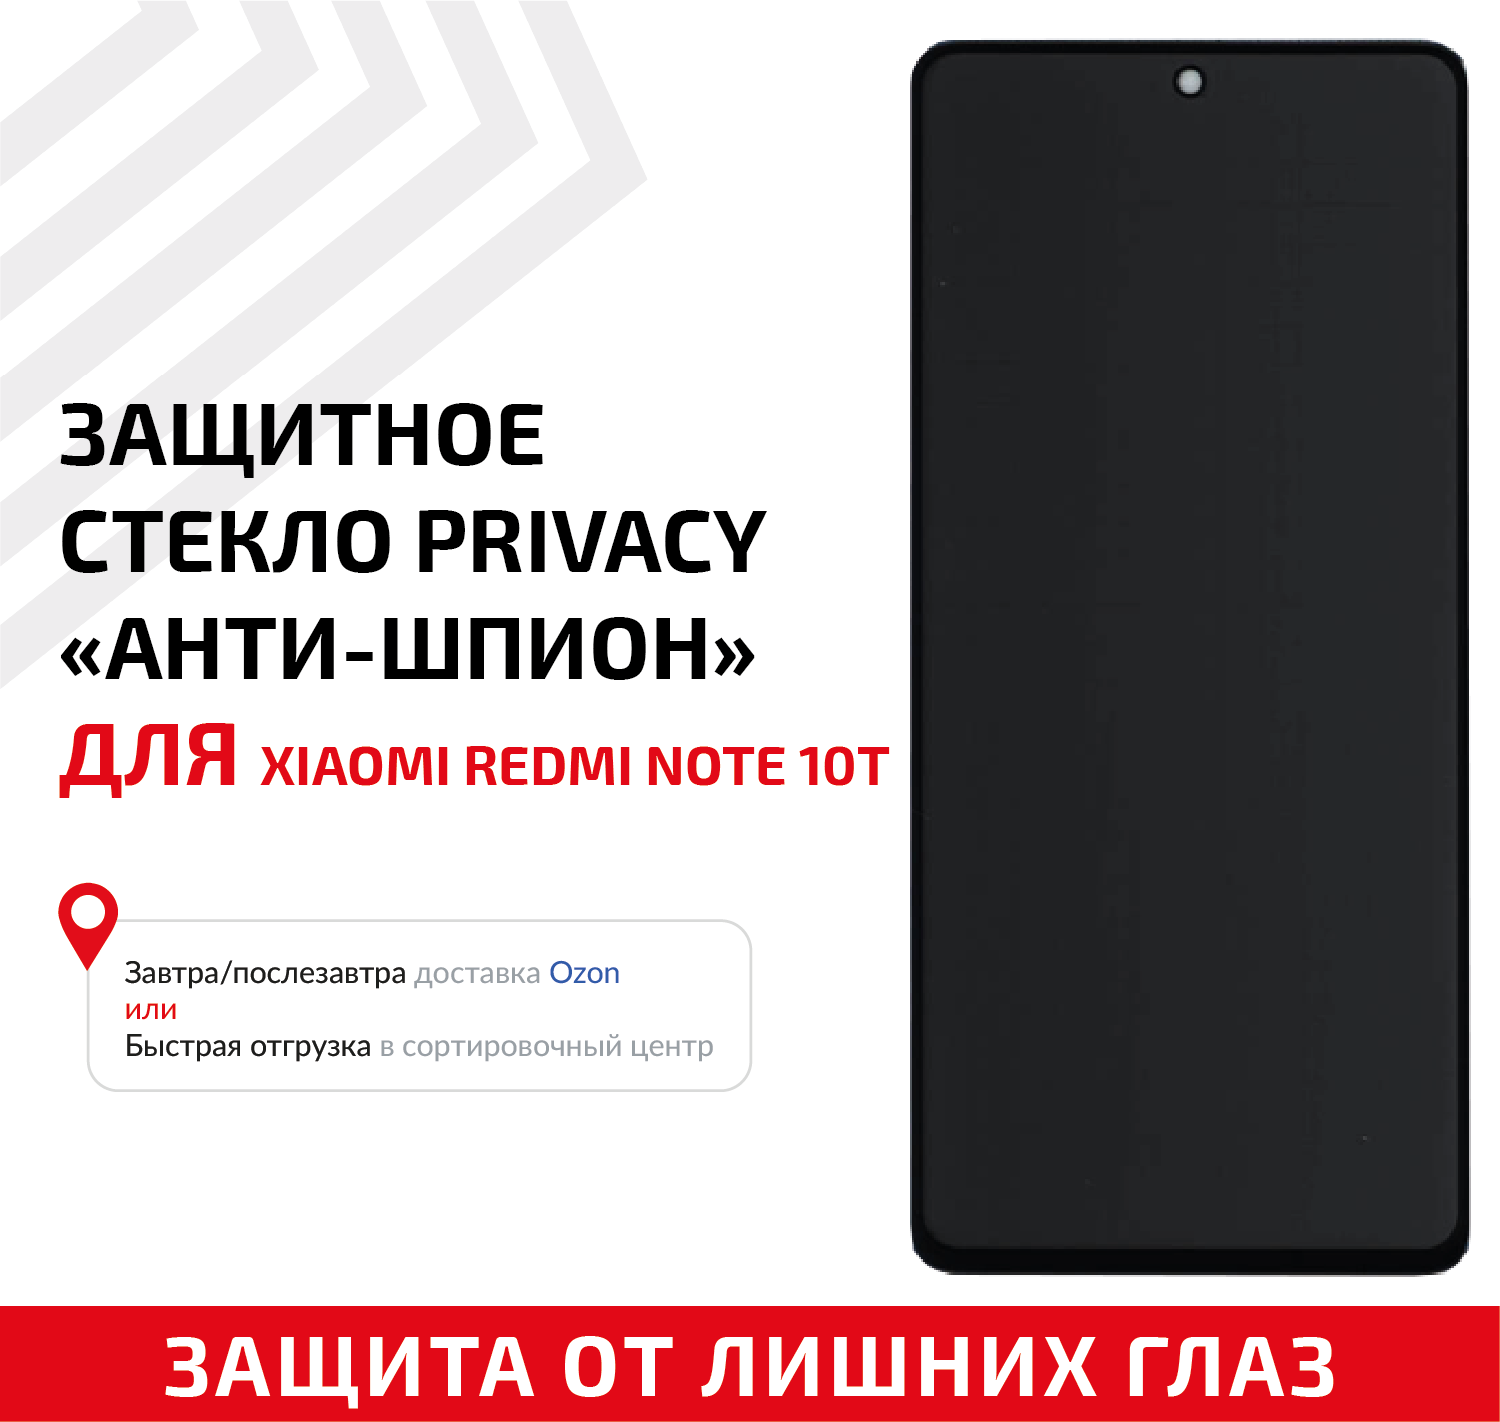 Защитное стекло Privacy "Анти-шпион" для мобильного телефона (смартфона) Xiaomi Redmi Note 10T, черное